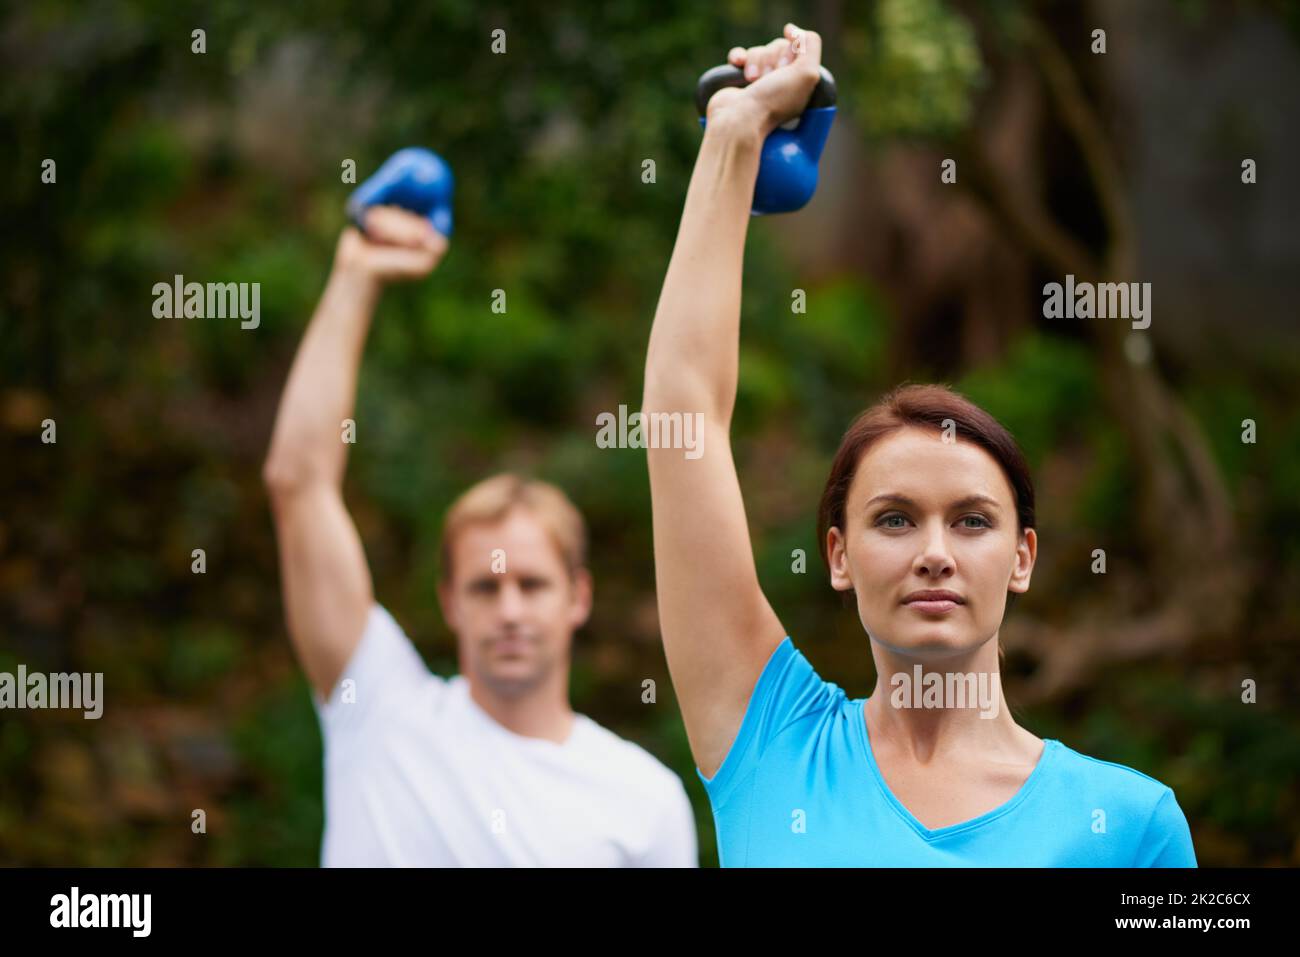 Faites de l'exercice à l'air frais. Prise de vue d'un homme et d'une femme utilisant des poids de cloche de bouilloire lors d'un cours d'exercice en plein air. Banque D'Images